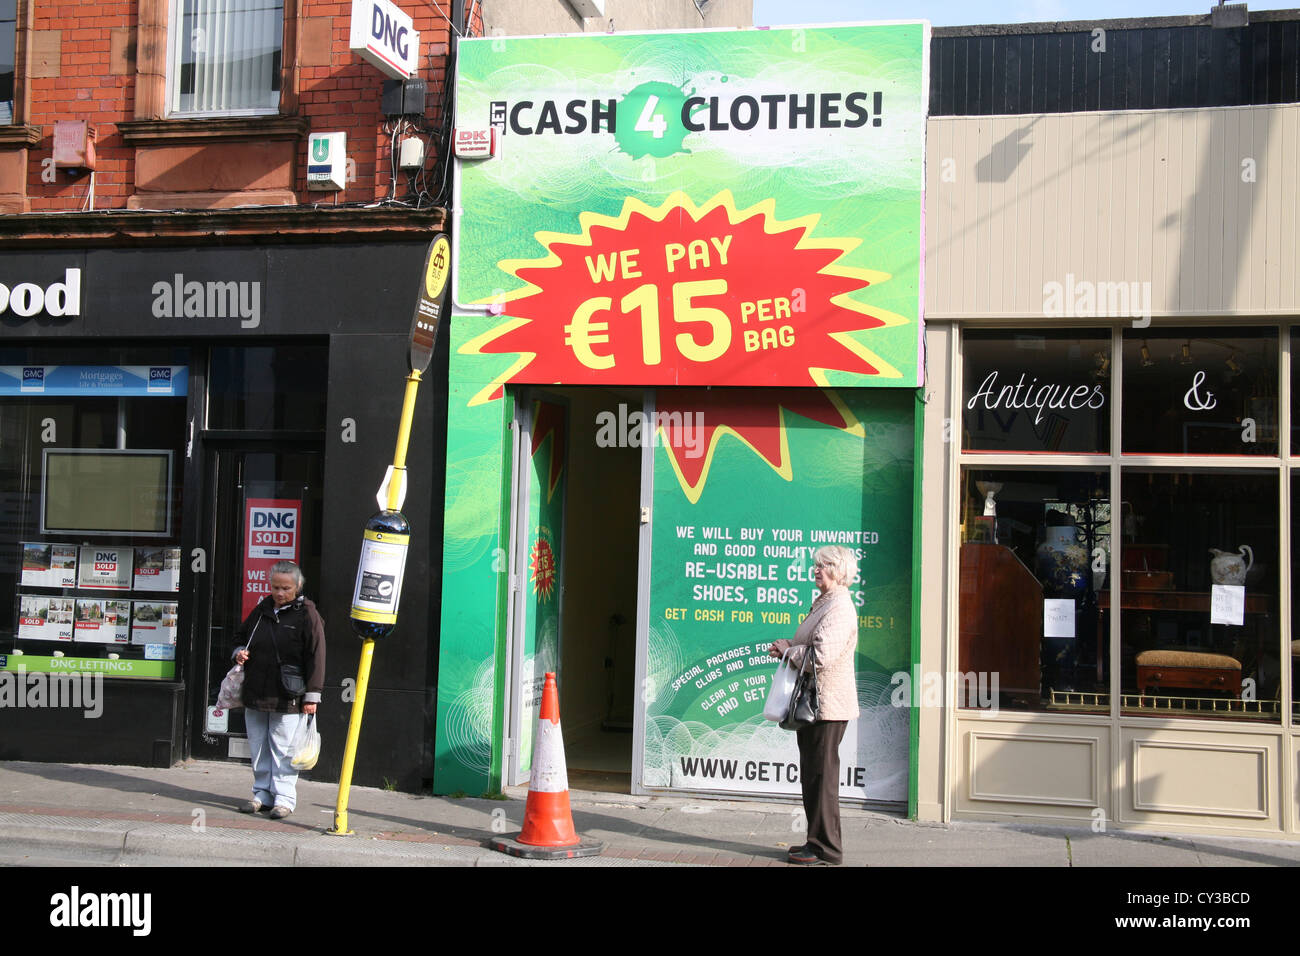 Efectivo 4 tienda de ropa en Dun Laoghaire, Dublín Irlanda Foto de stock